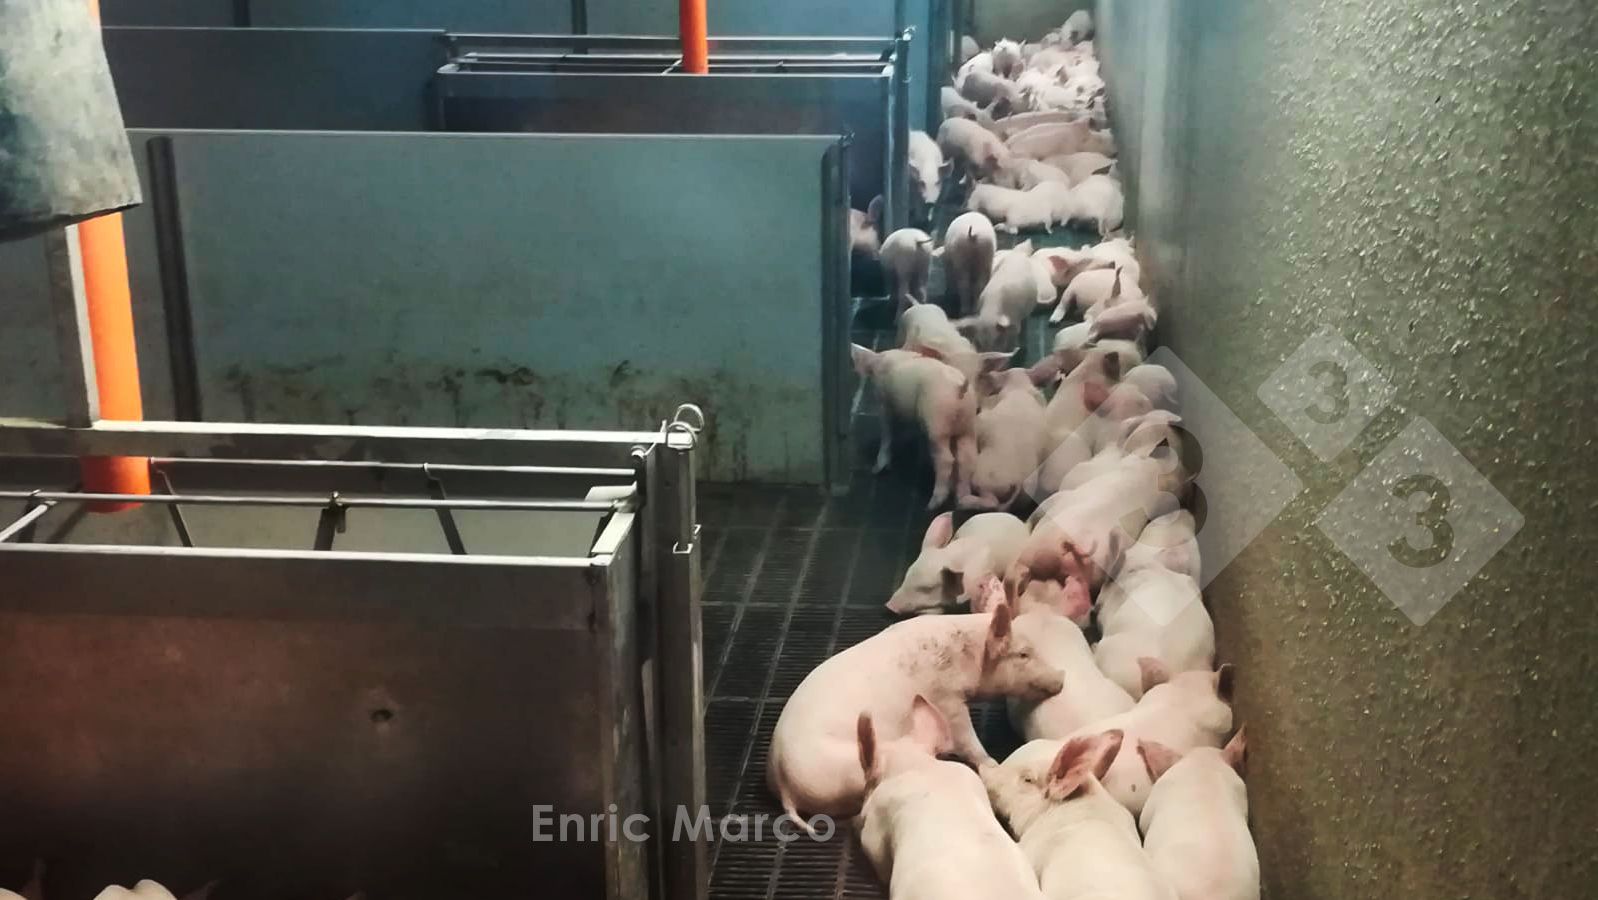 Кормушки для свиней: виды и особенности изготовления